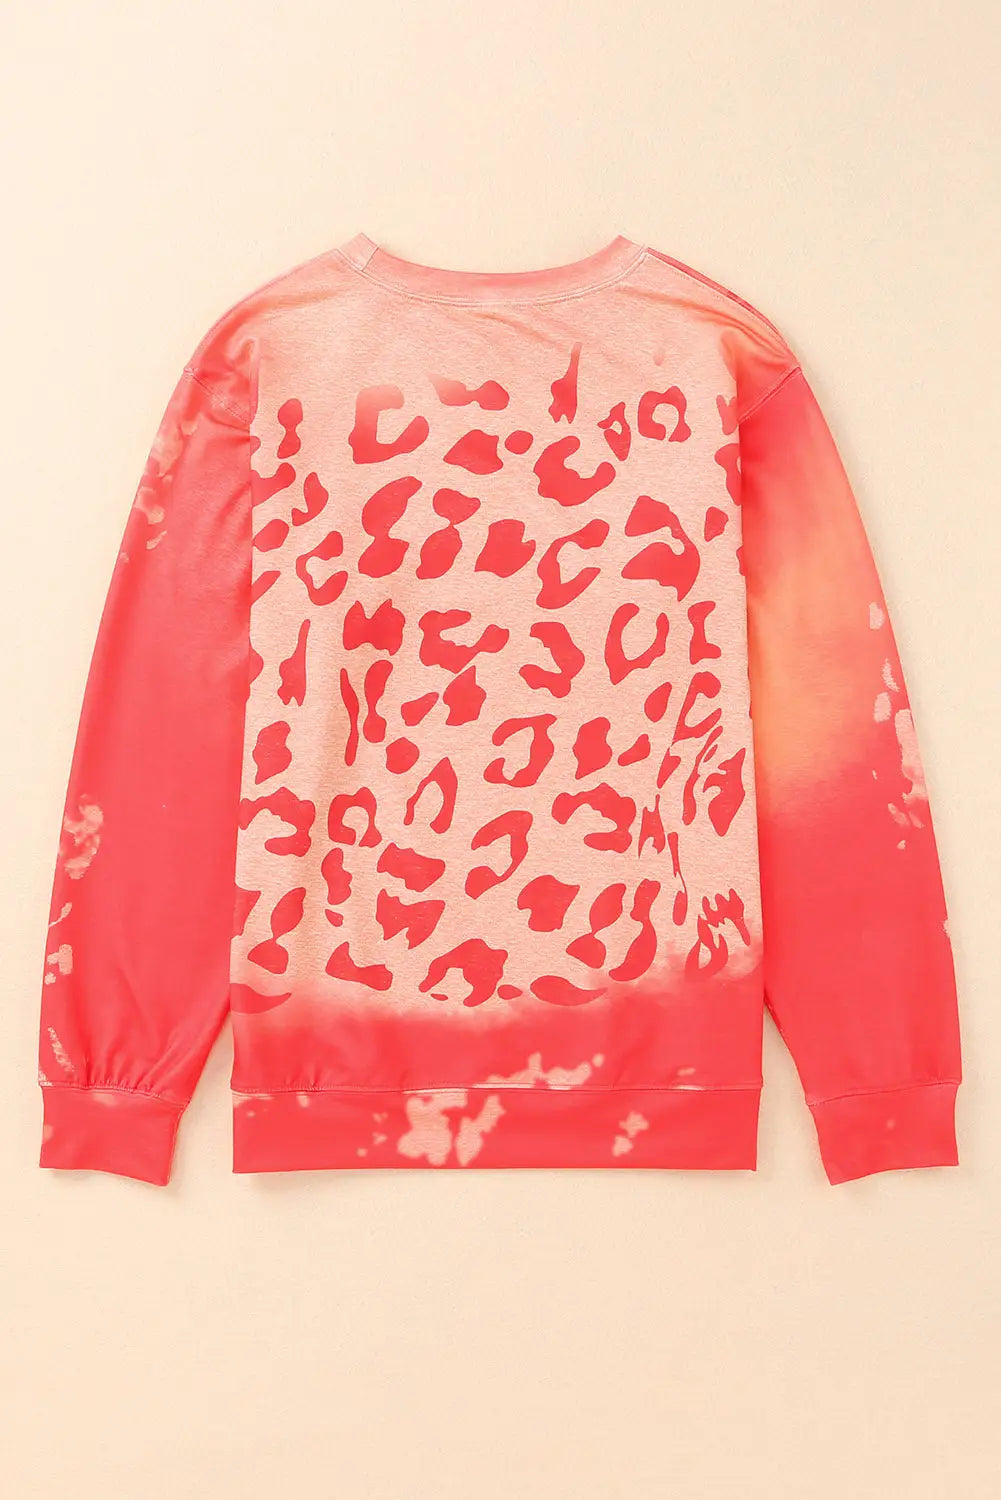 Pink bleached cheetah print sweatshirt - sweatshirts & hoodies